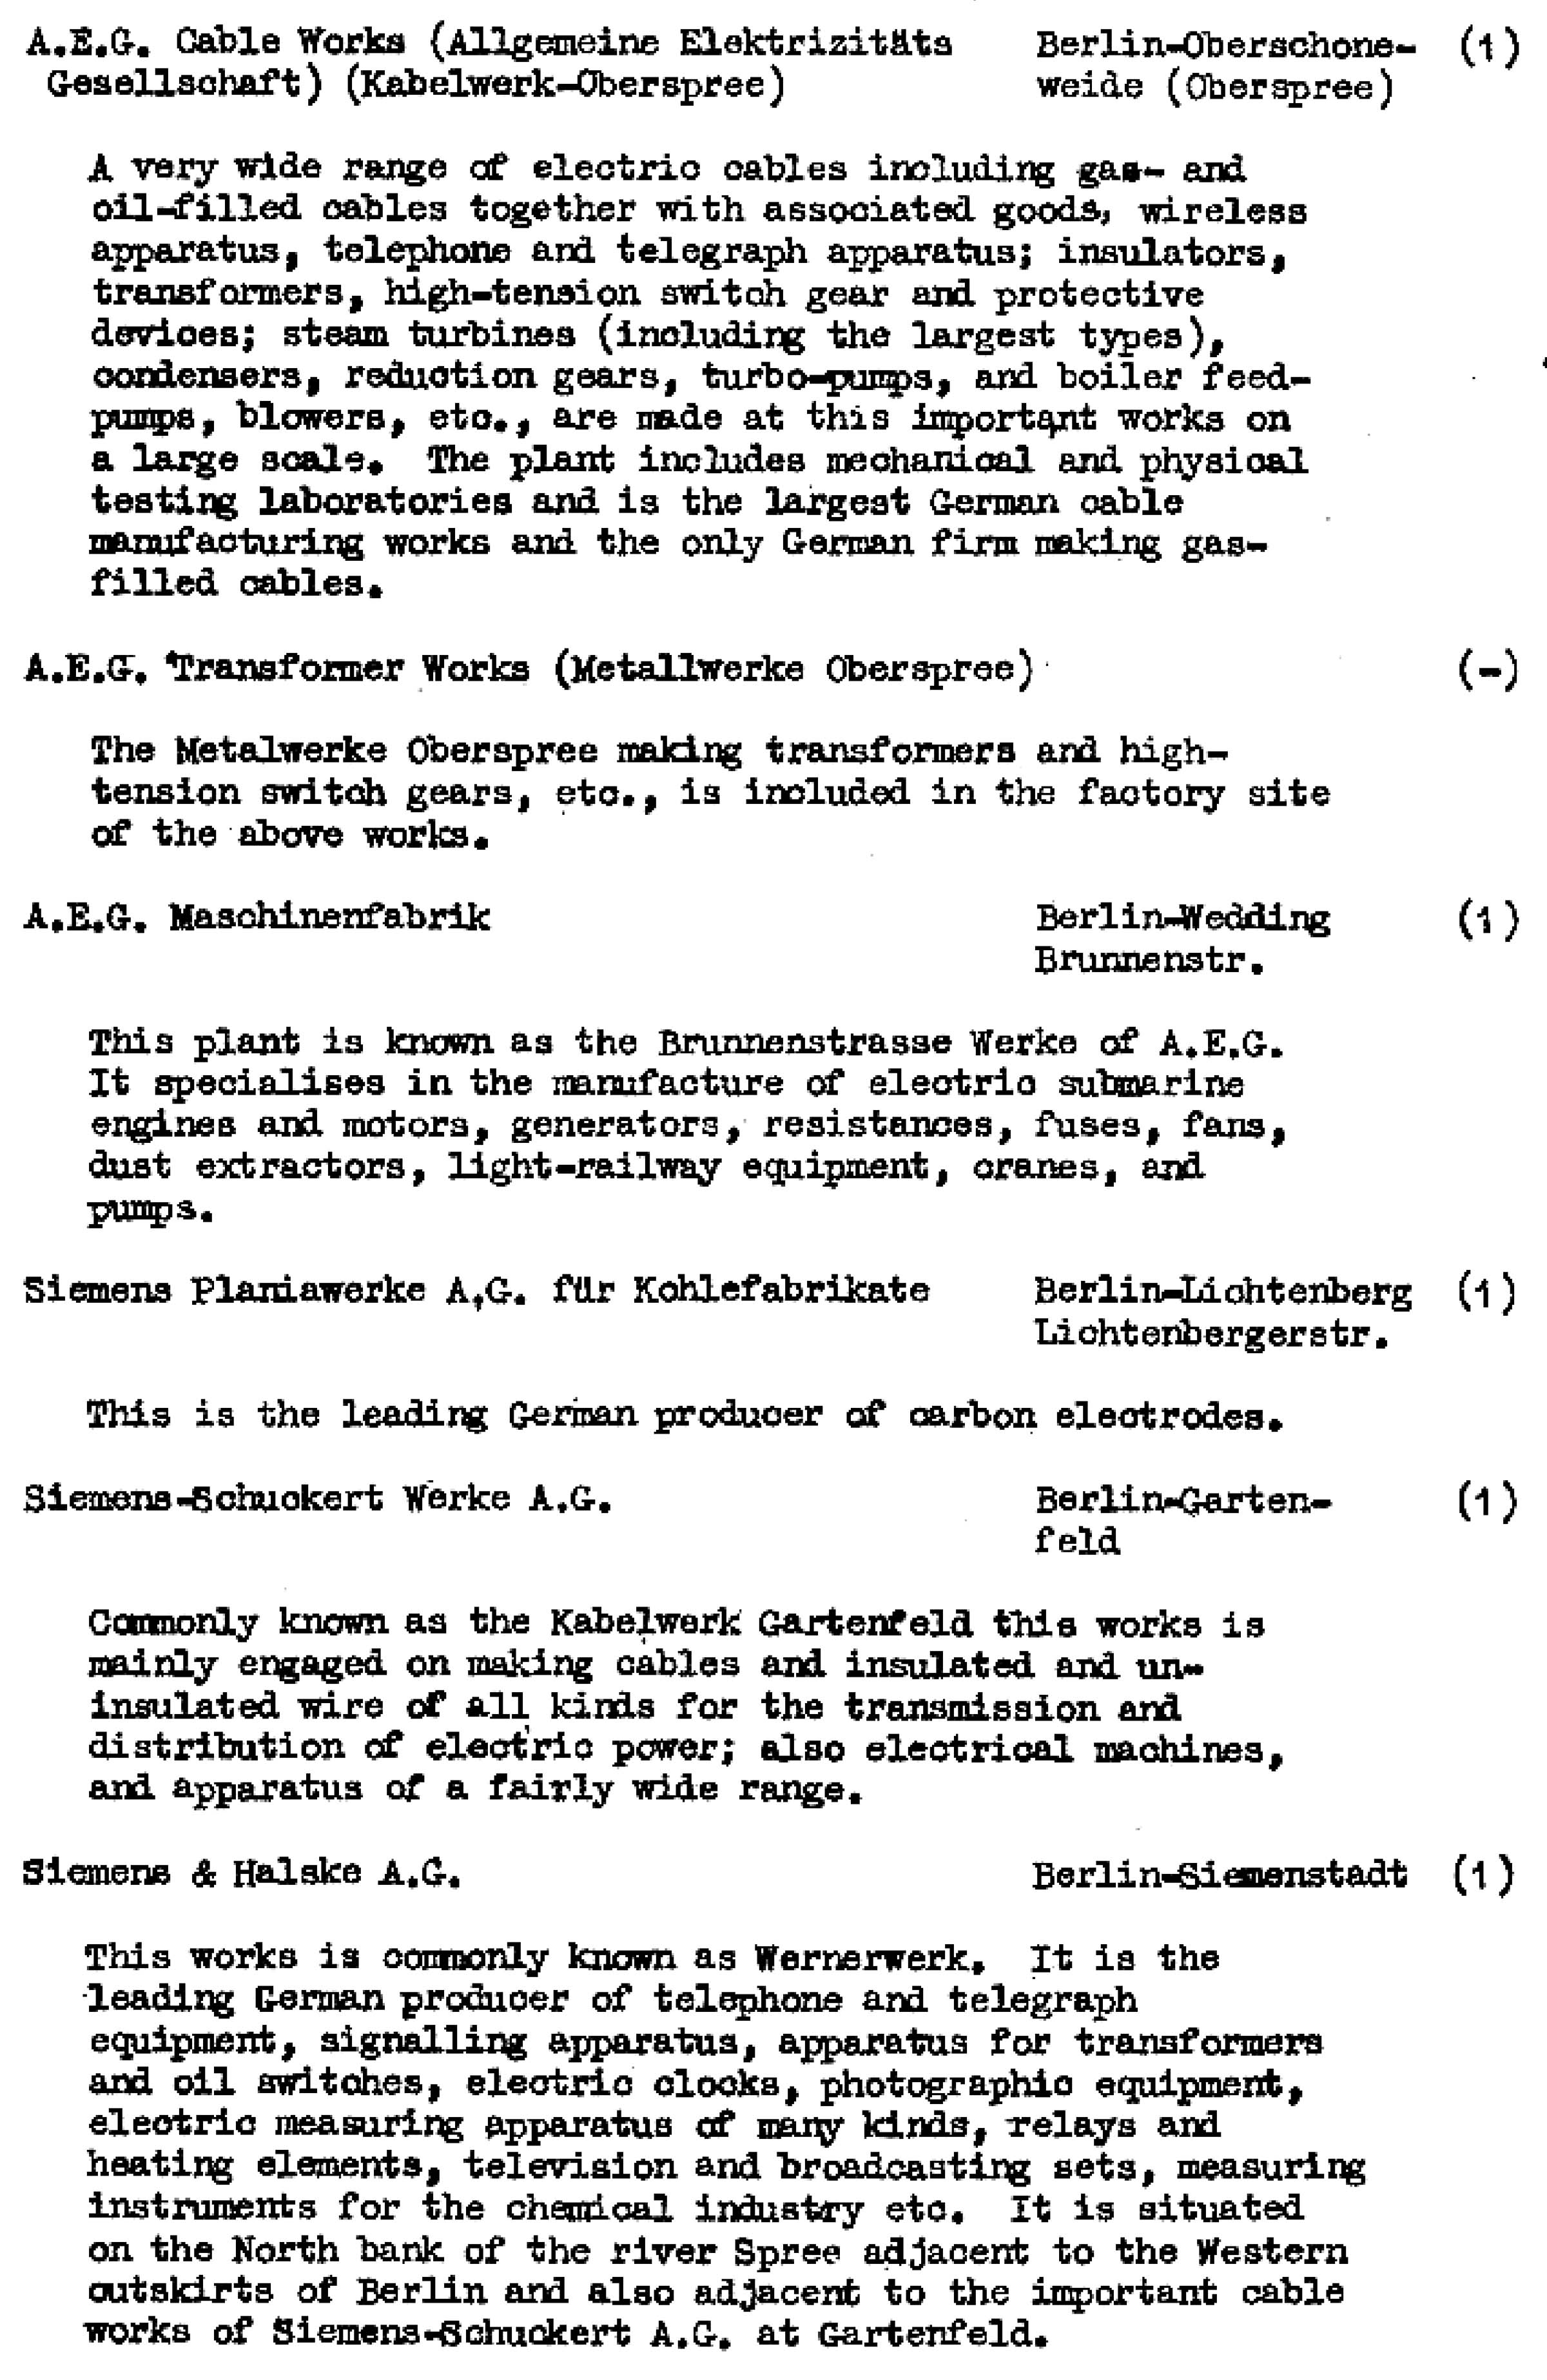 Die Ziele der alliierten Luftangriffe in Berlin im Zeiten Weltkrieg im Bomber's Baedeker - Originaldokument Seite 46